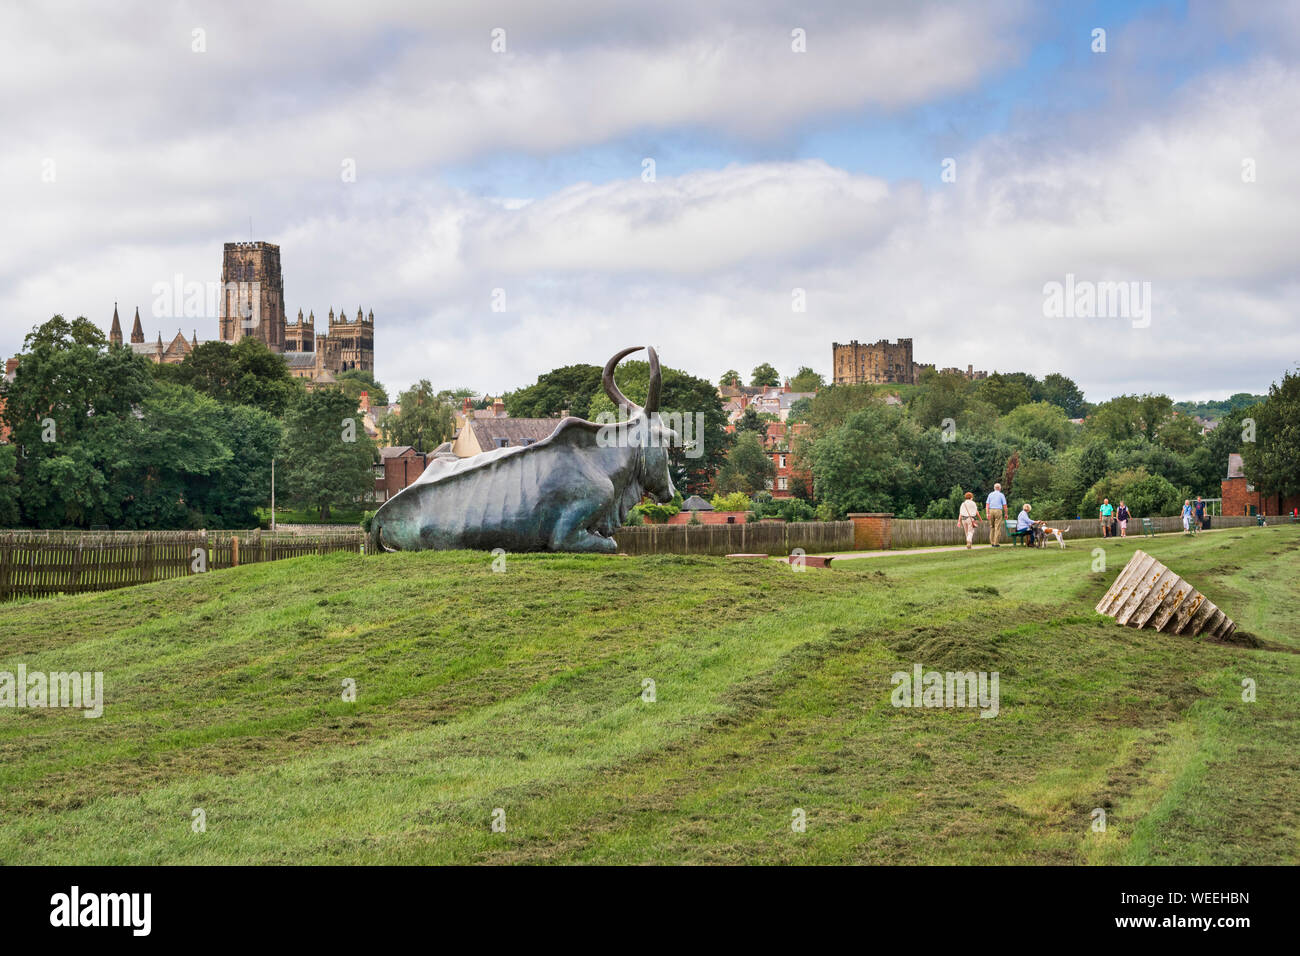 Les familles à pied par le 'Durham' vache sculpture de bronze qui repose sur l'herbe dans le parc de terrains en vue de la cathédrale de Durham et le château Banque D'Images